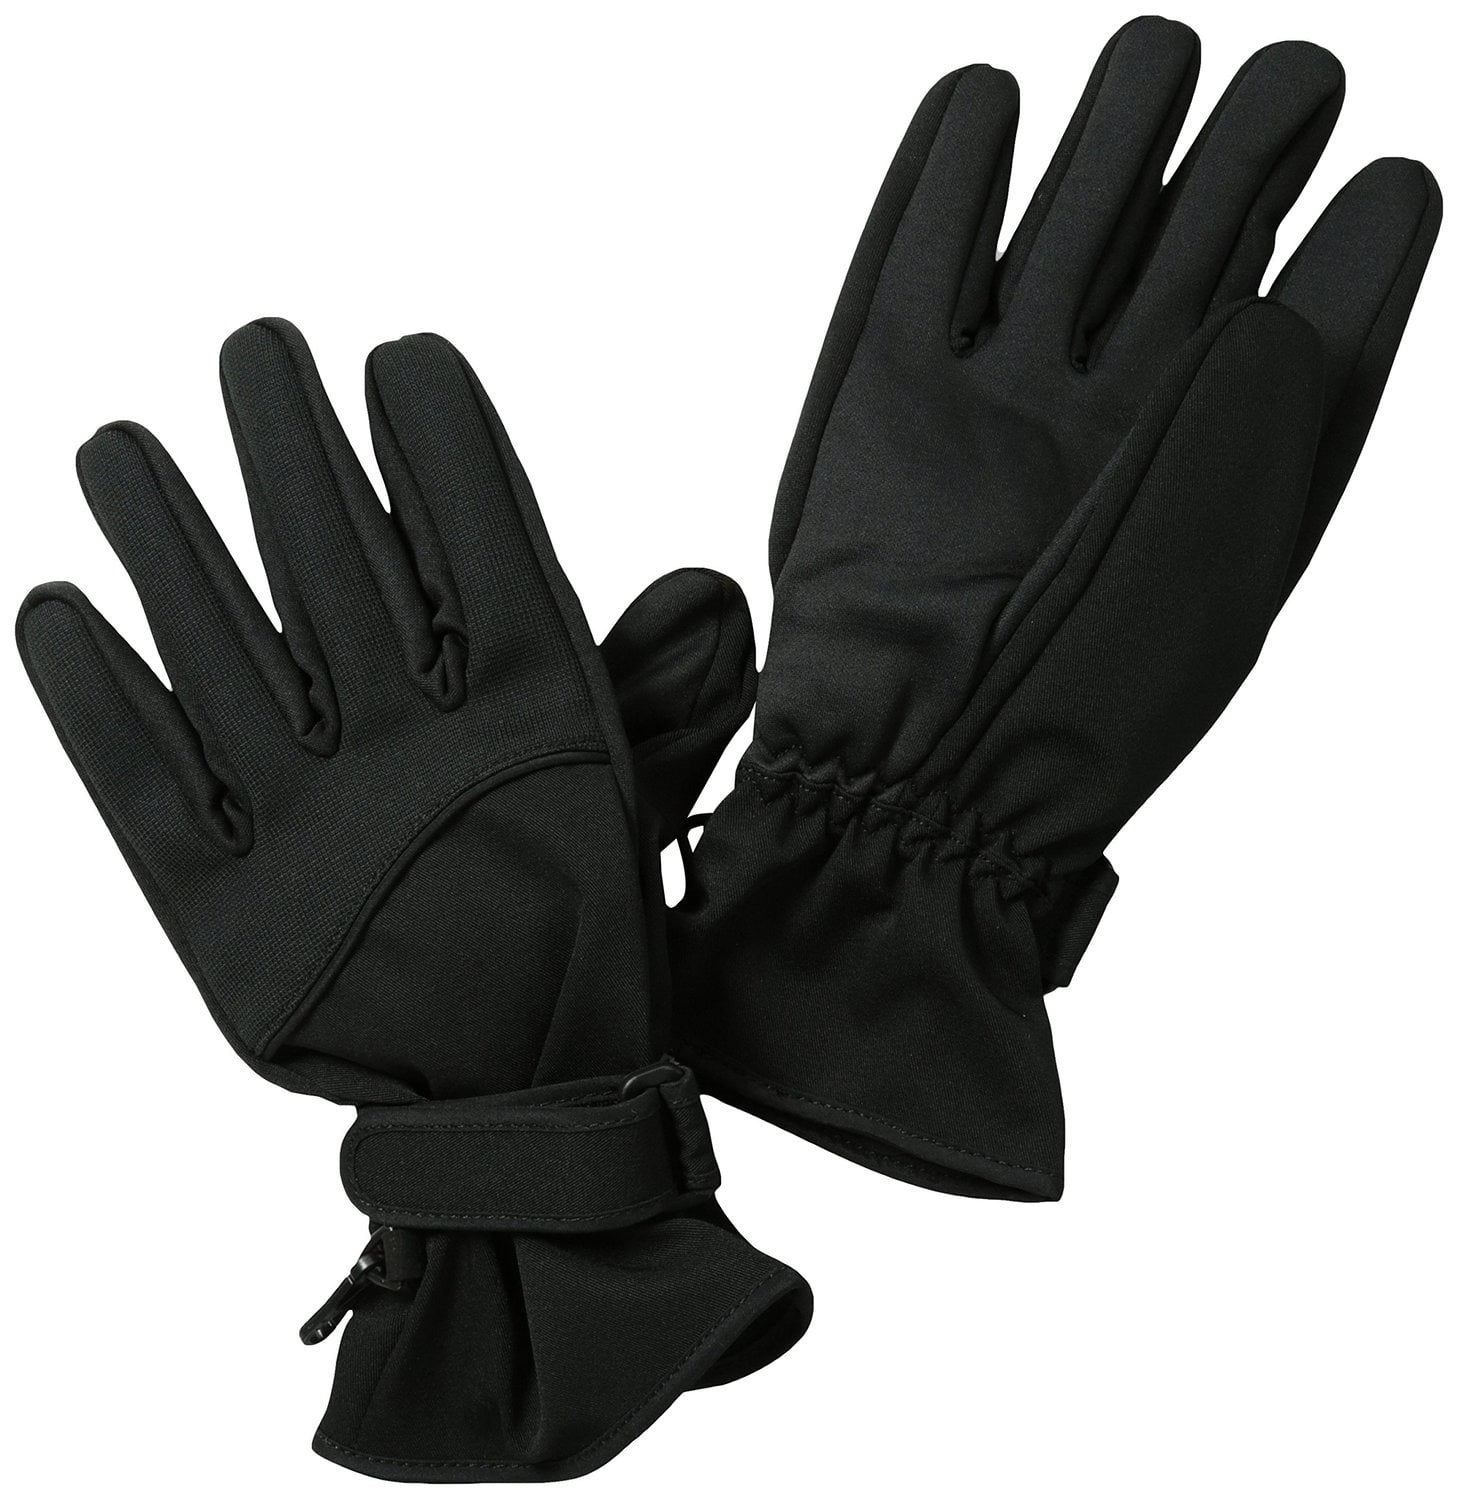 Seirus Innovation Skelton Winter Gloves Built in Support Black / L Large 